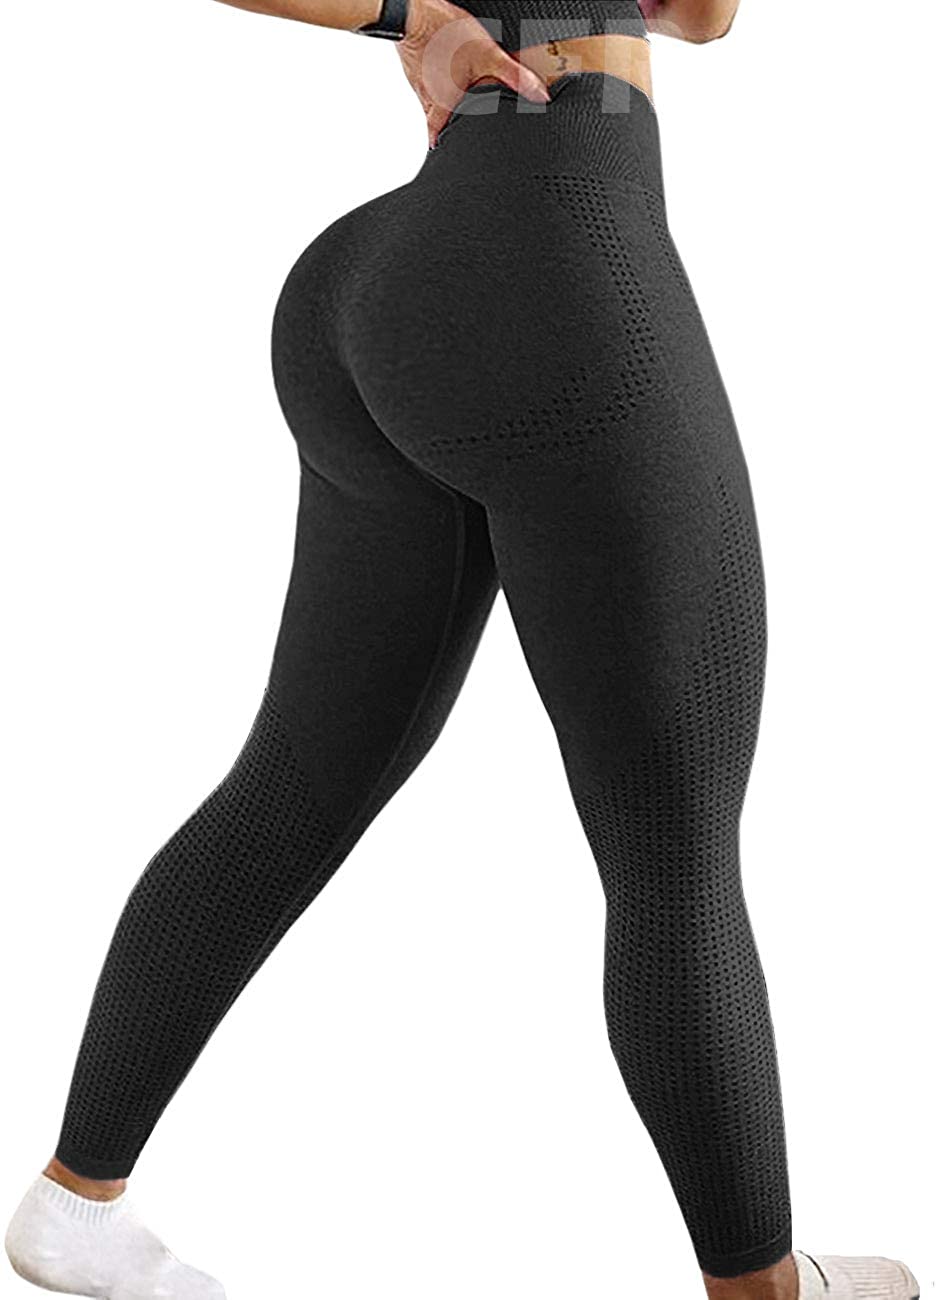 CFR Women Workout Leggings High Waist Scrunch Peach Butt Lifting Tummy  Control Gym Sport Fitness Tights